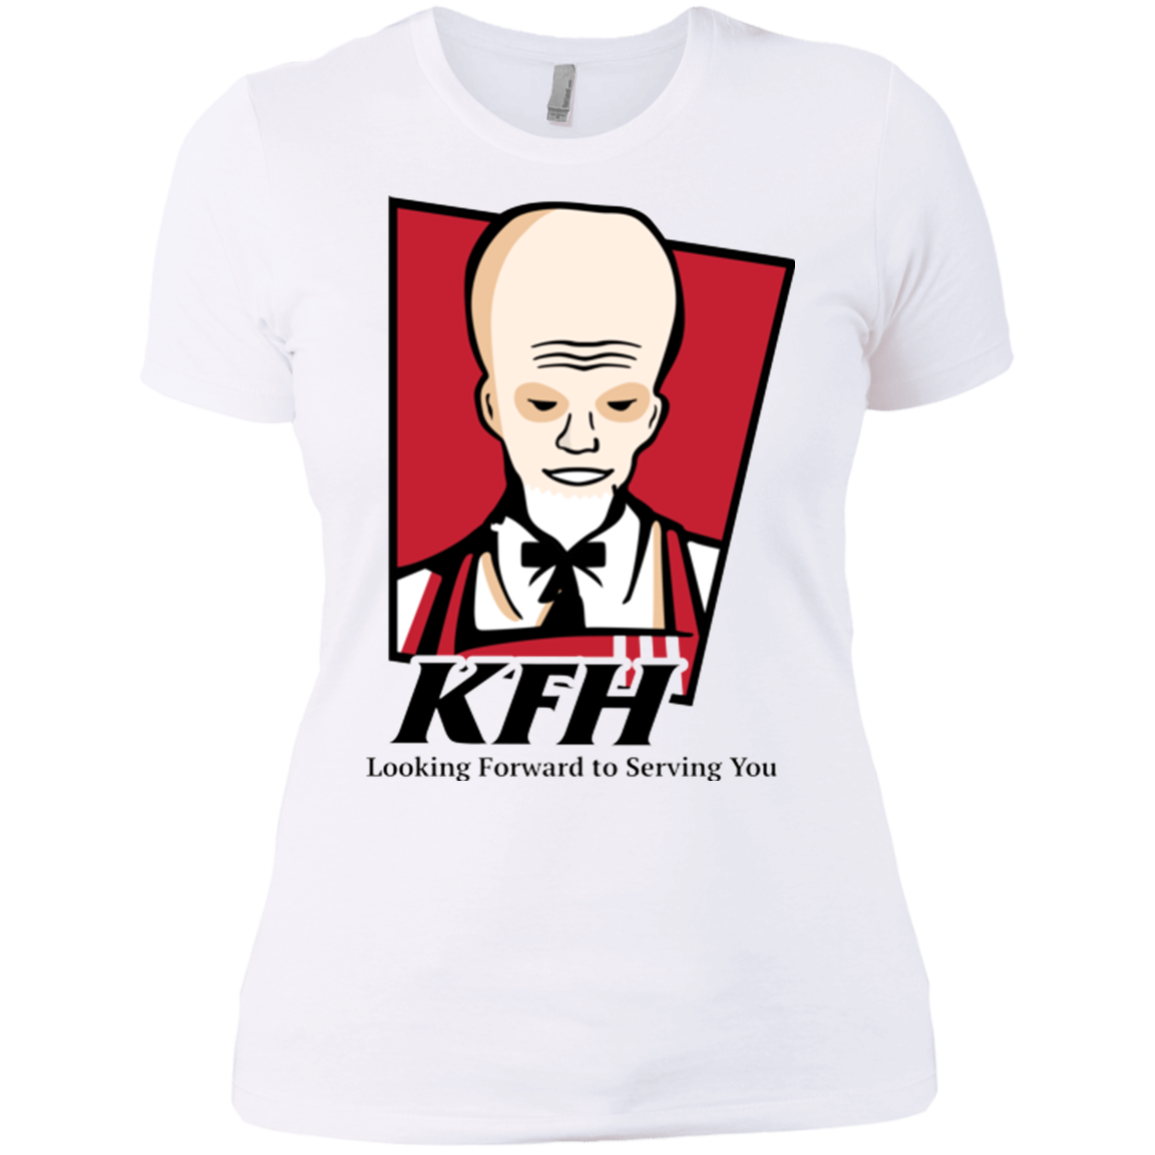 KFH Women's Premium T-Shirt